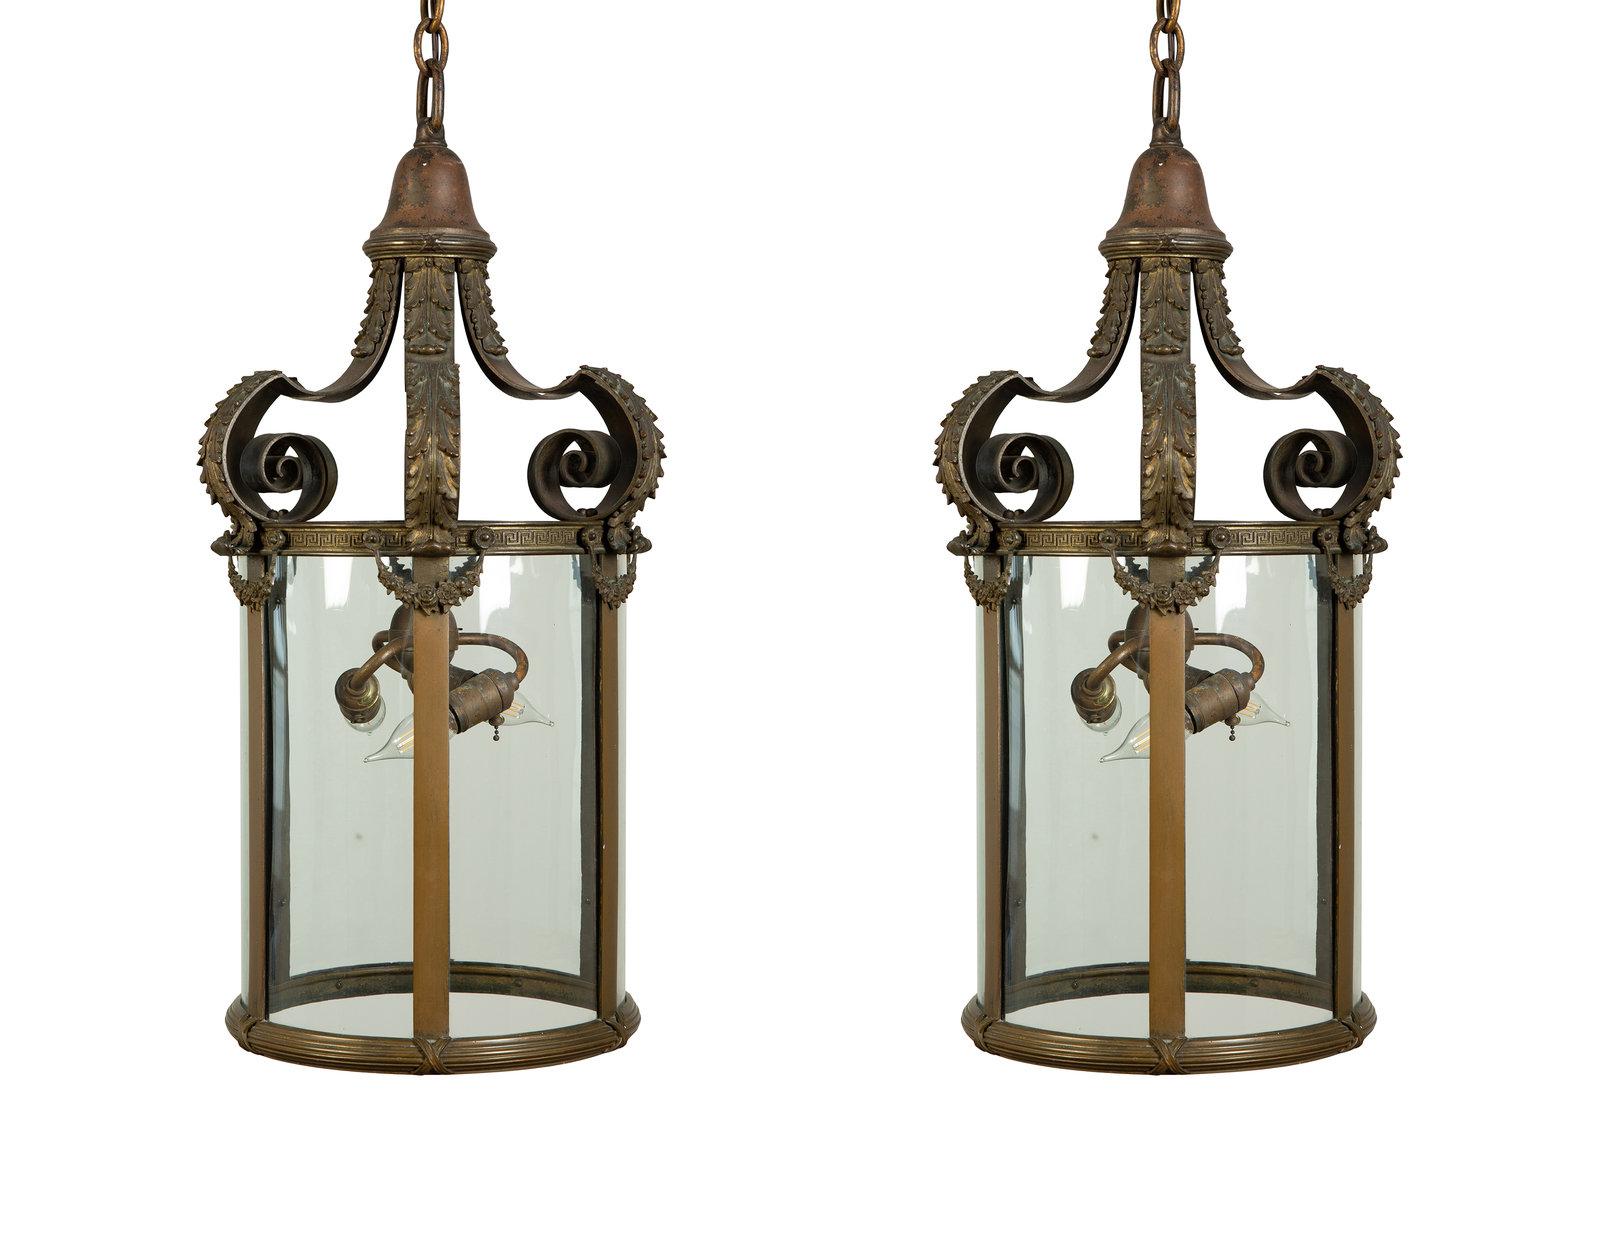 Une belle et élégante lanterne de style Louis XVI en bronze doré. Panneaux de verre incurvés. 
Paire disponible. France, vers 1920.
Dimensions : Hauteur 28